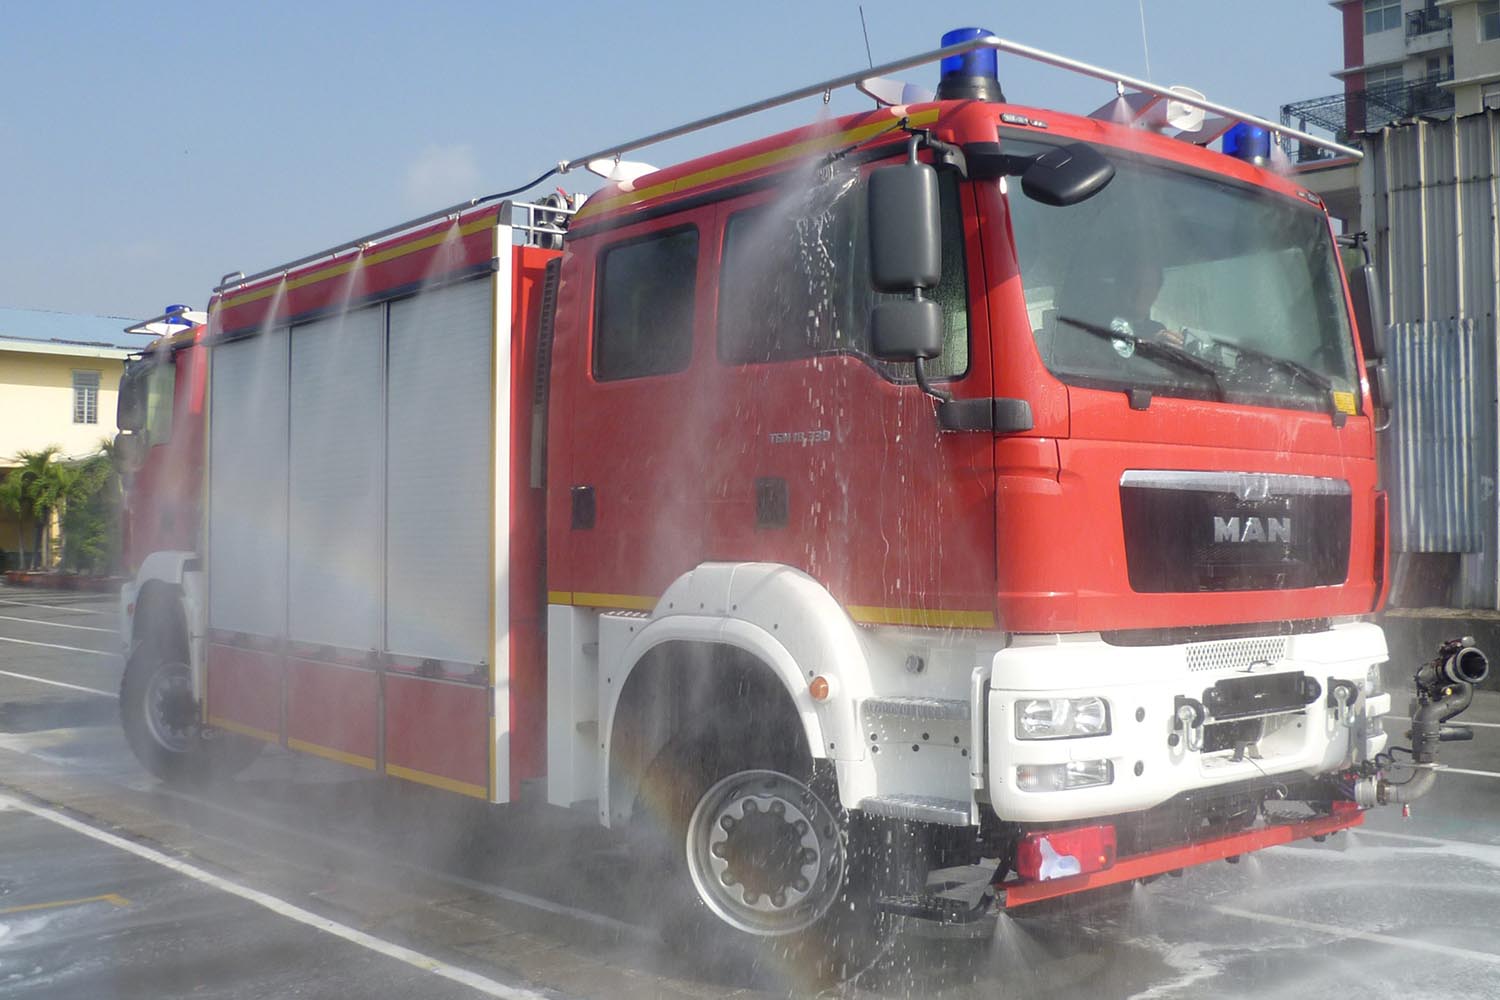 Firefighting Vehicle